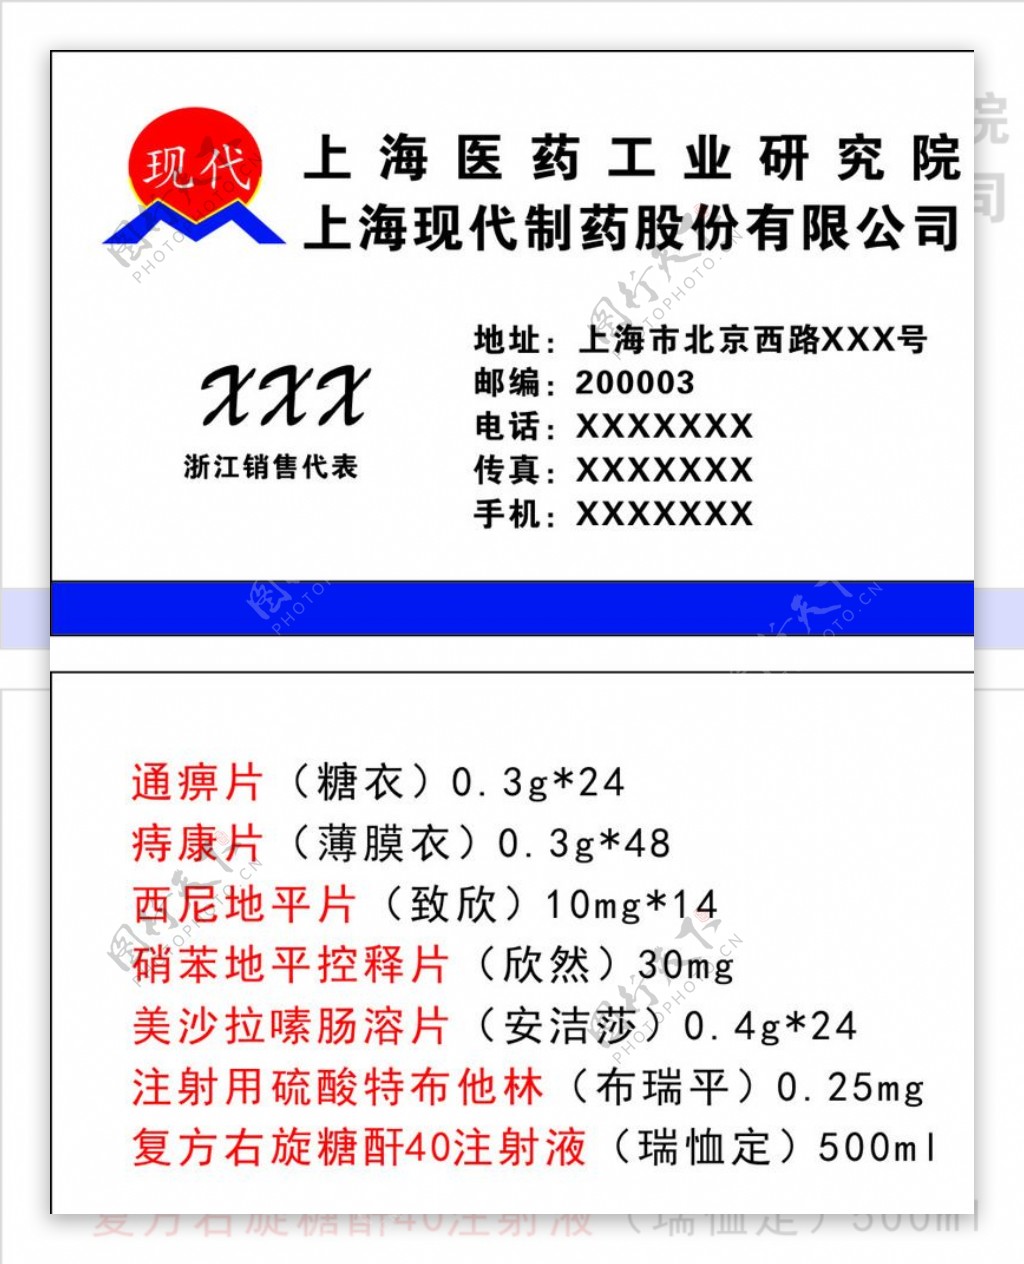 上海现代制药股份有限公司名片图片